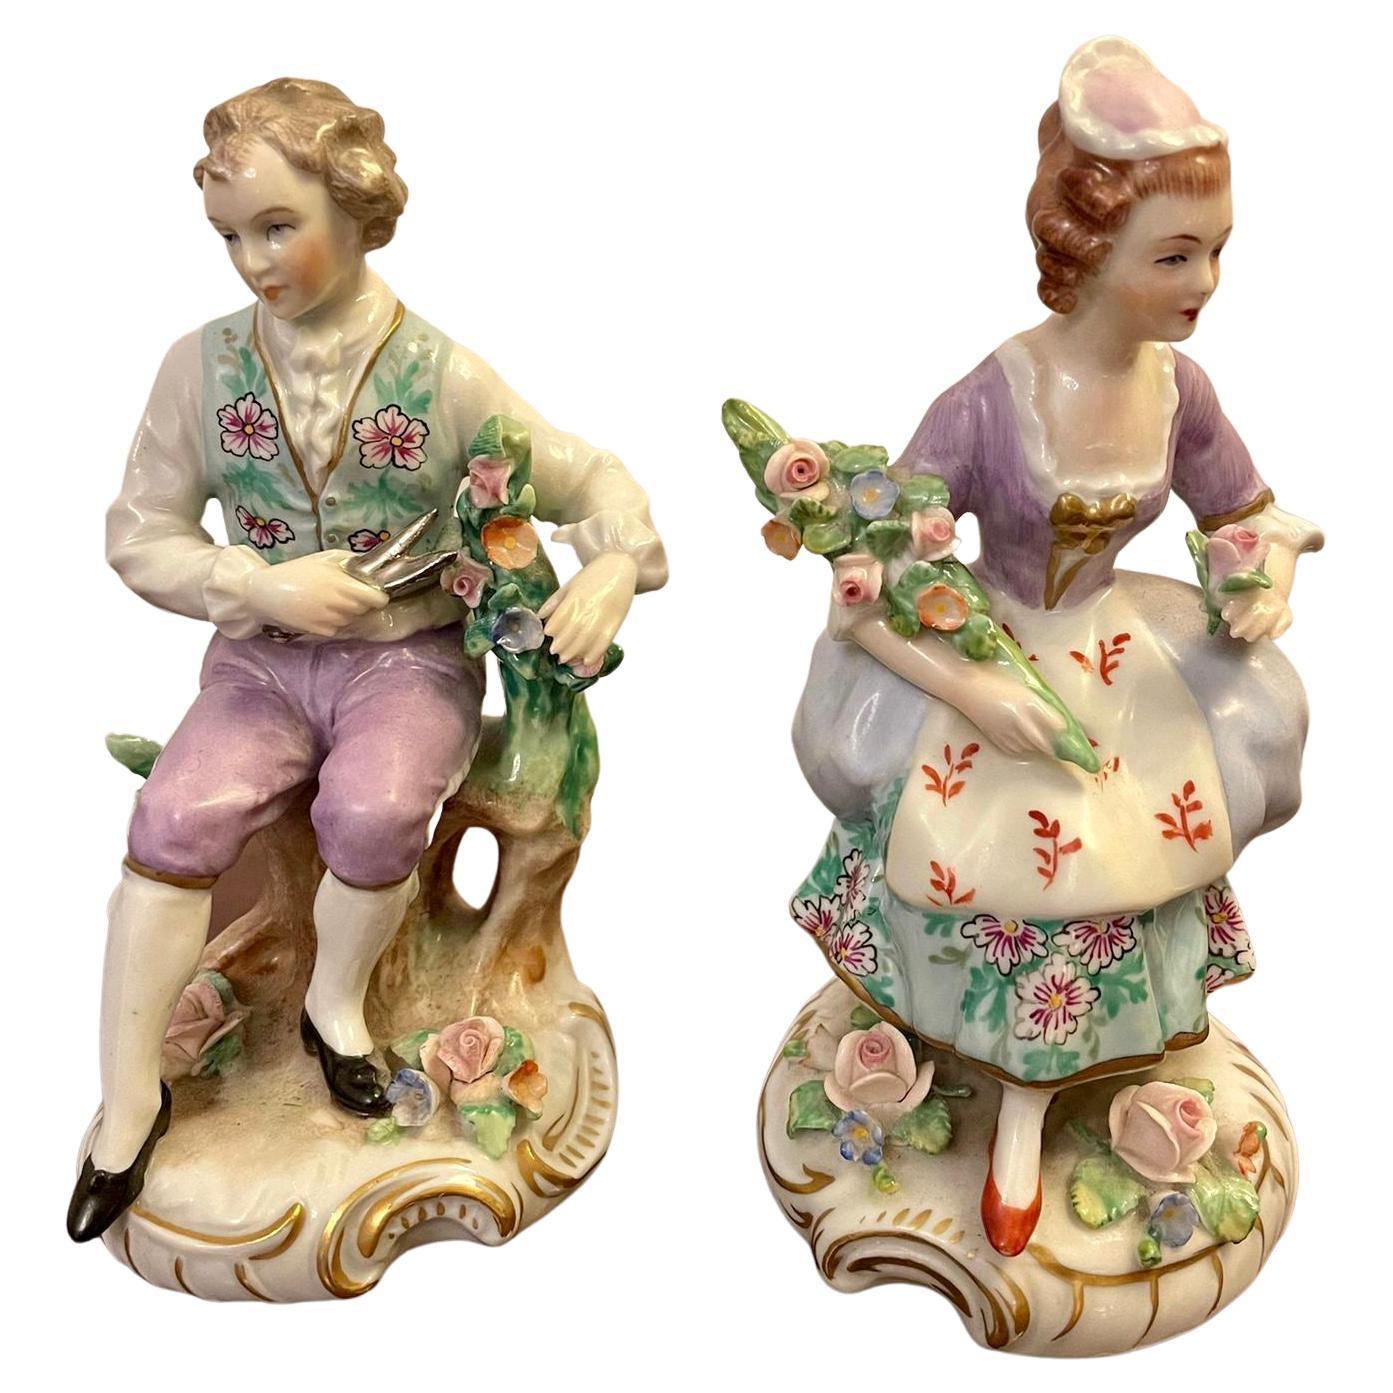 Pair of Original Antique Victorian Sitzendorf Figures